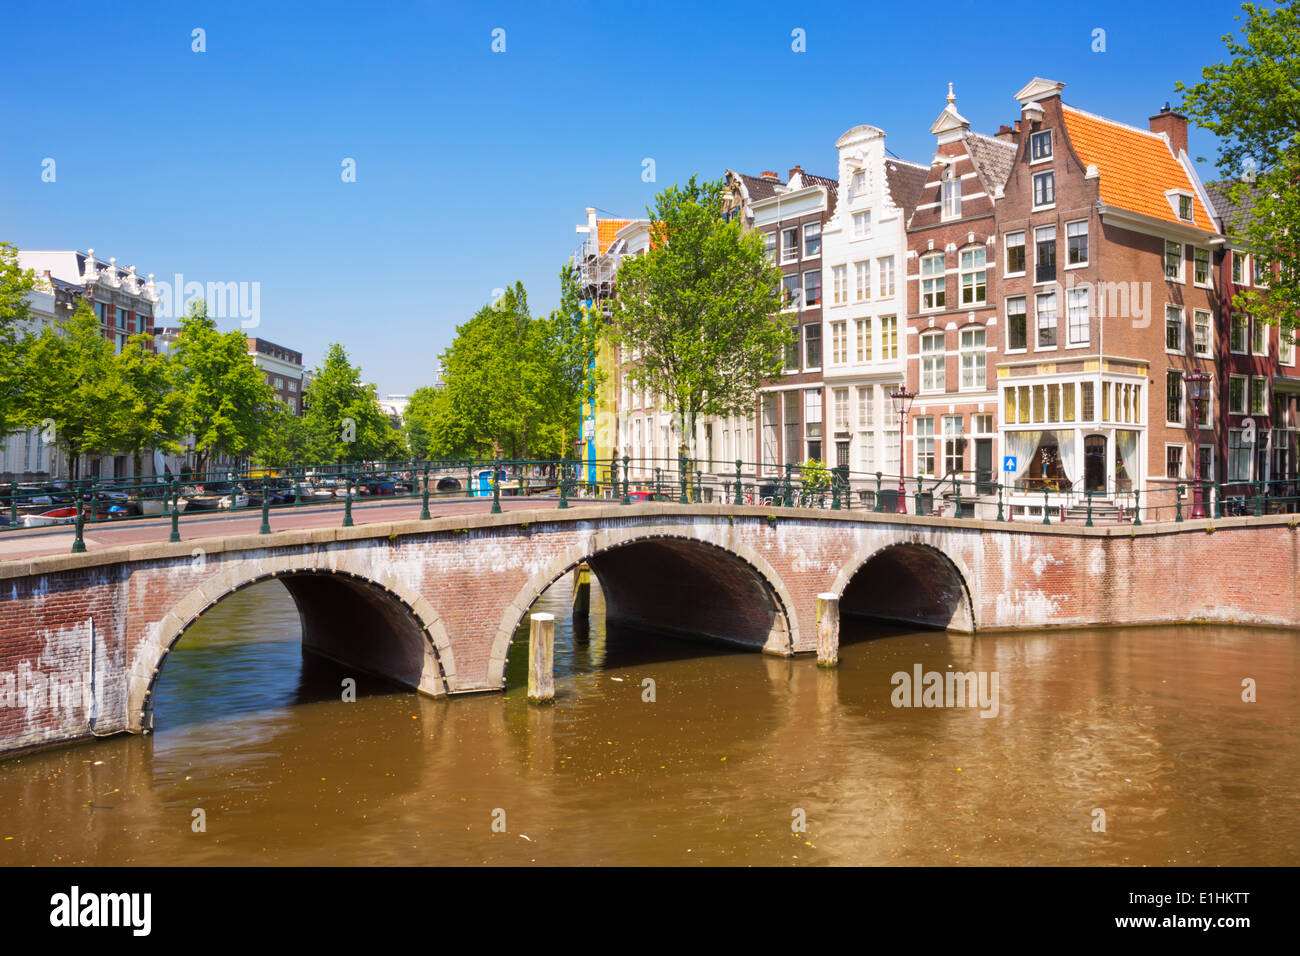 Des ponts et des maisons le long d'un canal dans la ville d'Amsterdam, aux Pays-Bas sur une belle journée ensoleillée Banque D'Images